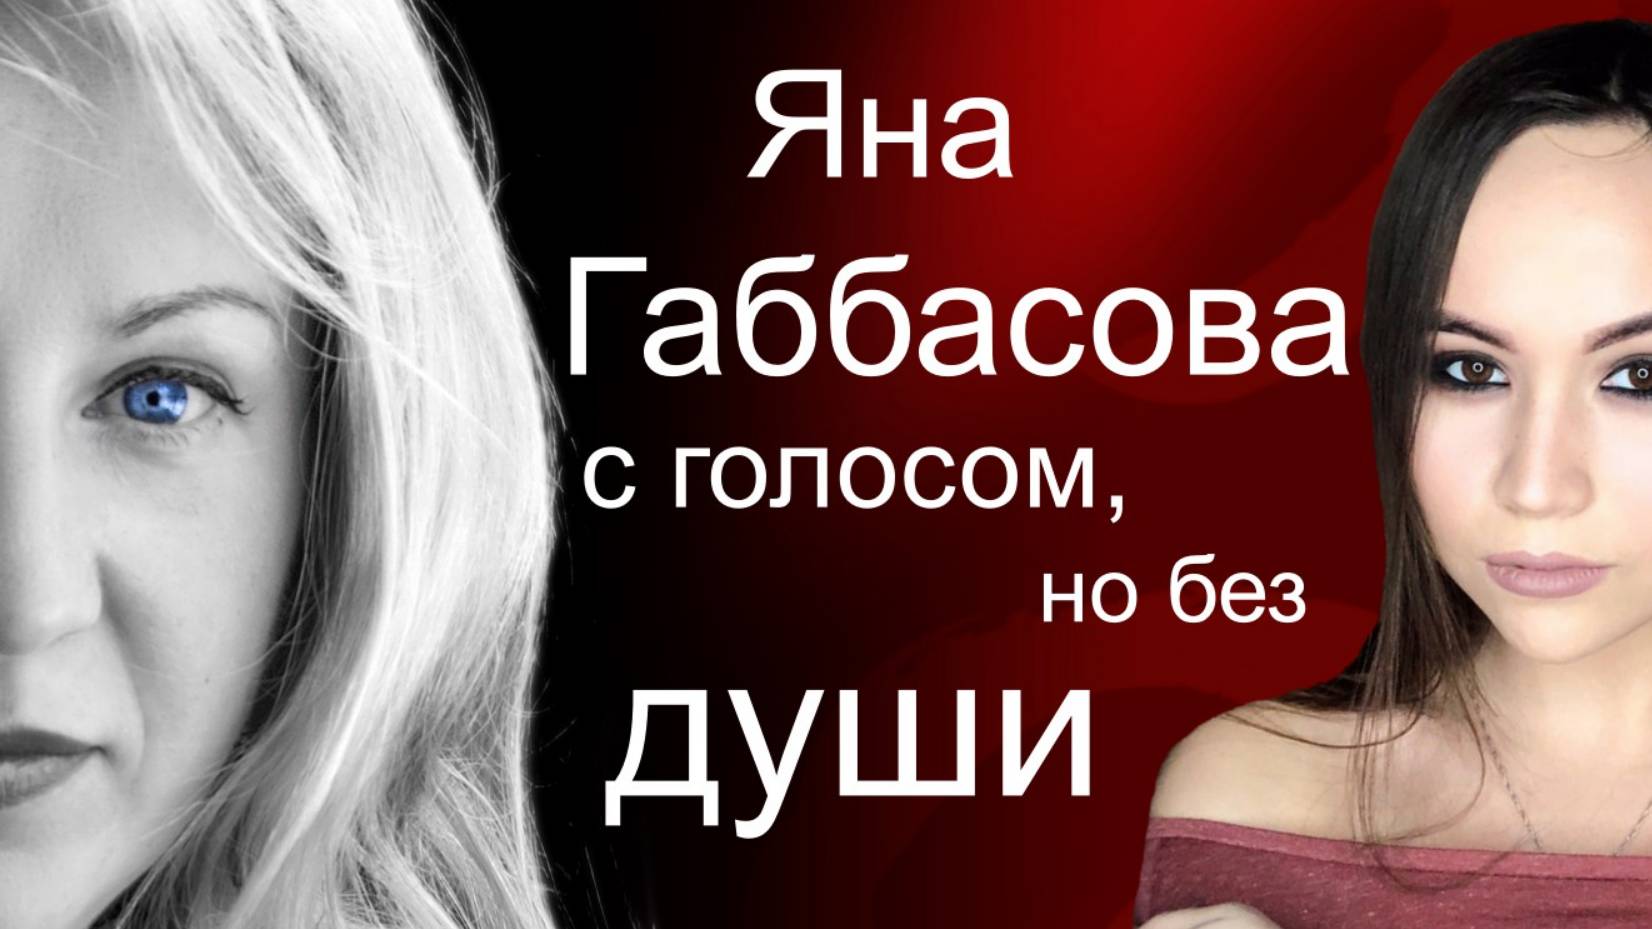 Может ли быть музыкант без эмпатии? Почему победа на шоу "Голос 9" досталась Яне Габбасовой?